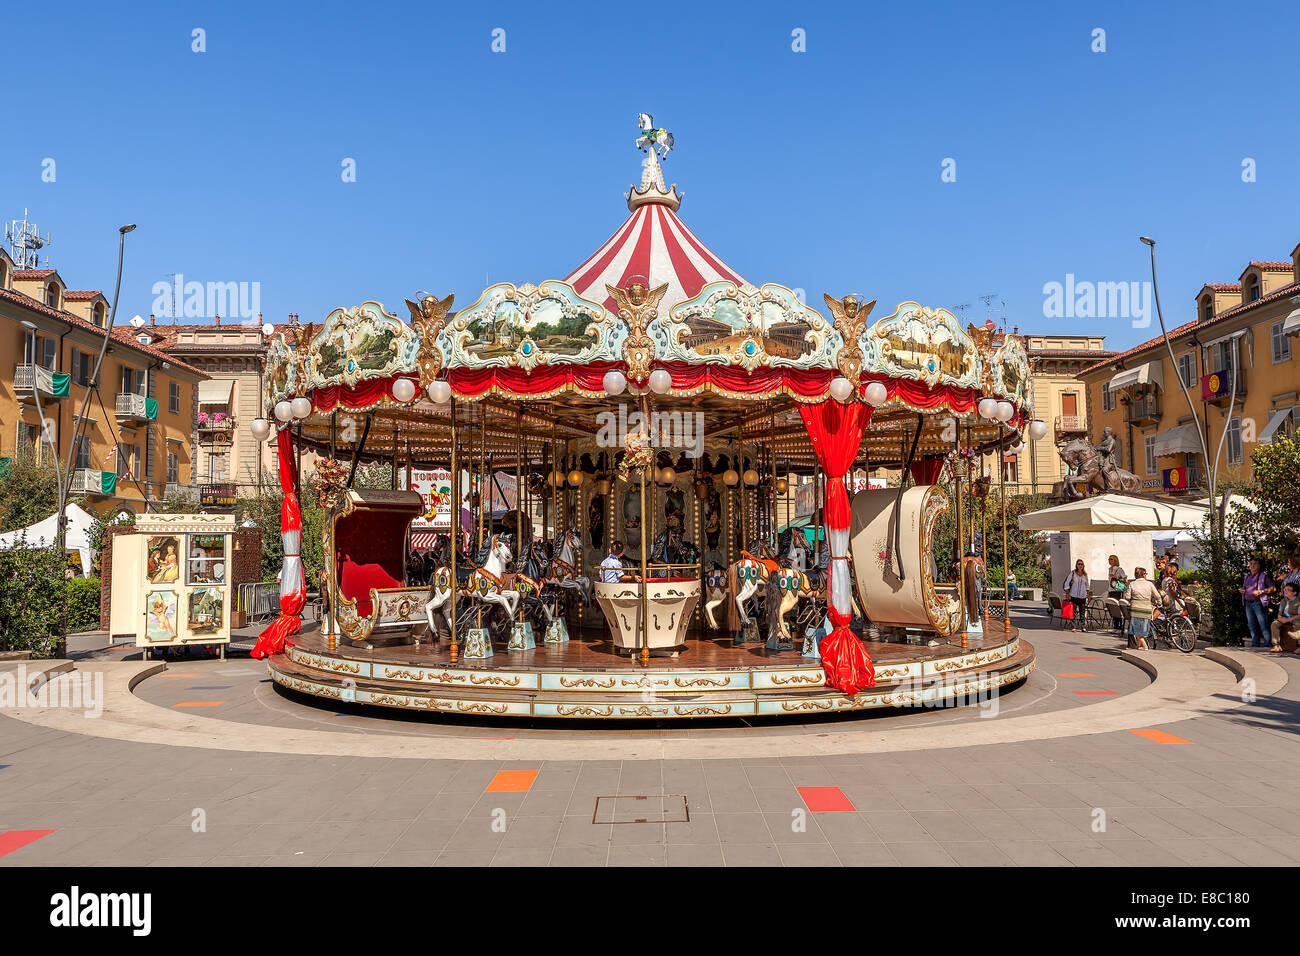 Carrusel en la plaza del pueblo, en Alba, Italia. Foto de stock